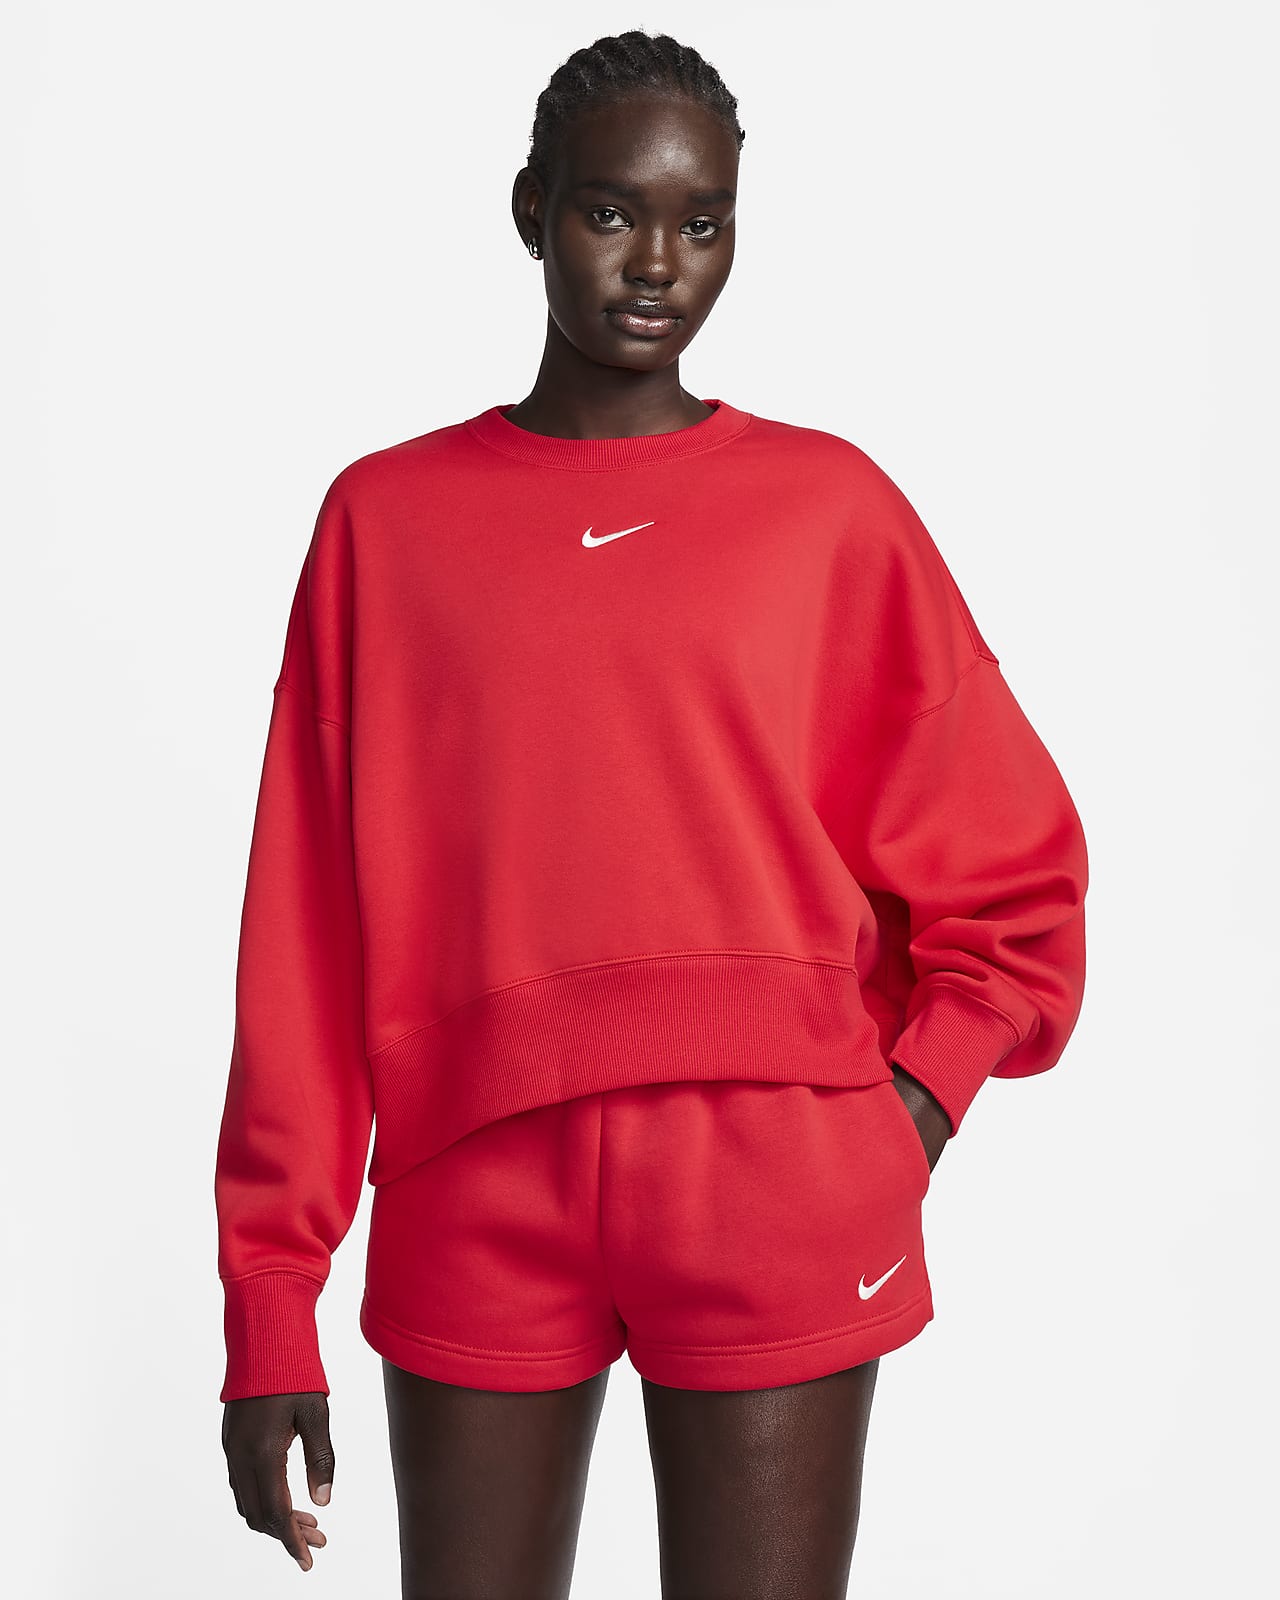 Women's Nike Sportswear Phoenix Fleece Oversized Crewneck